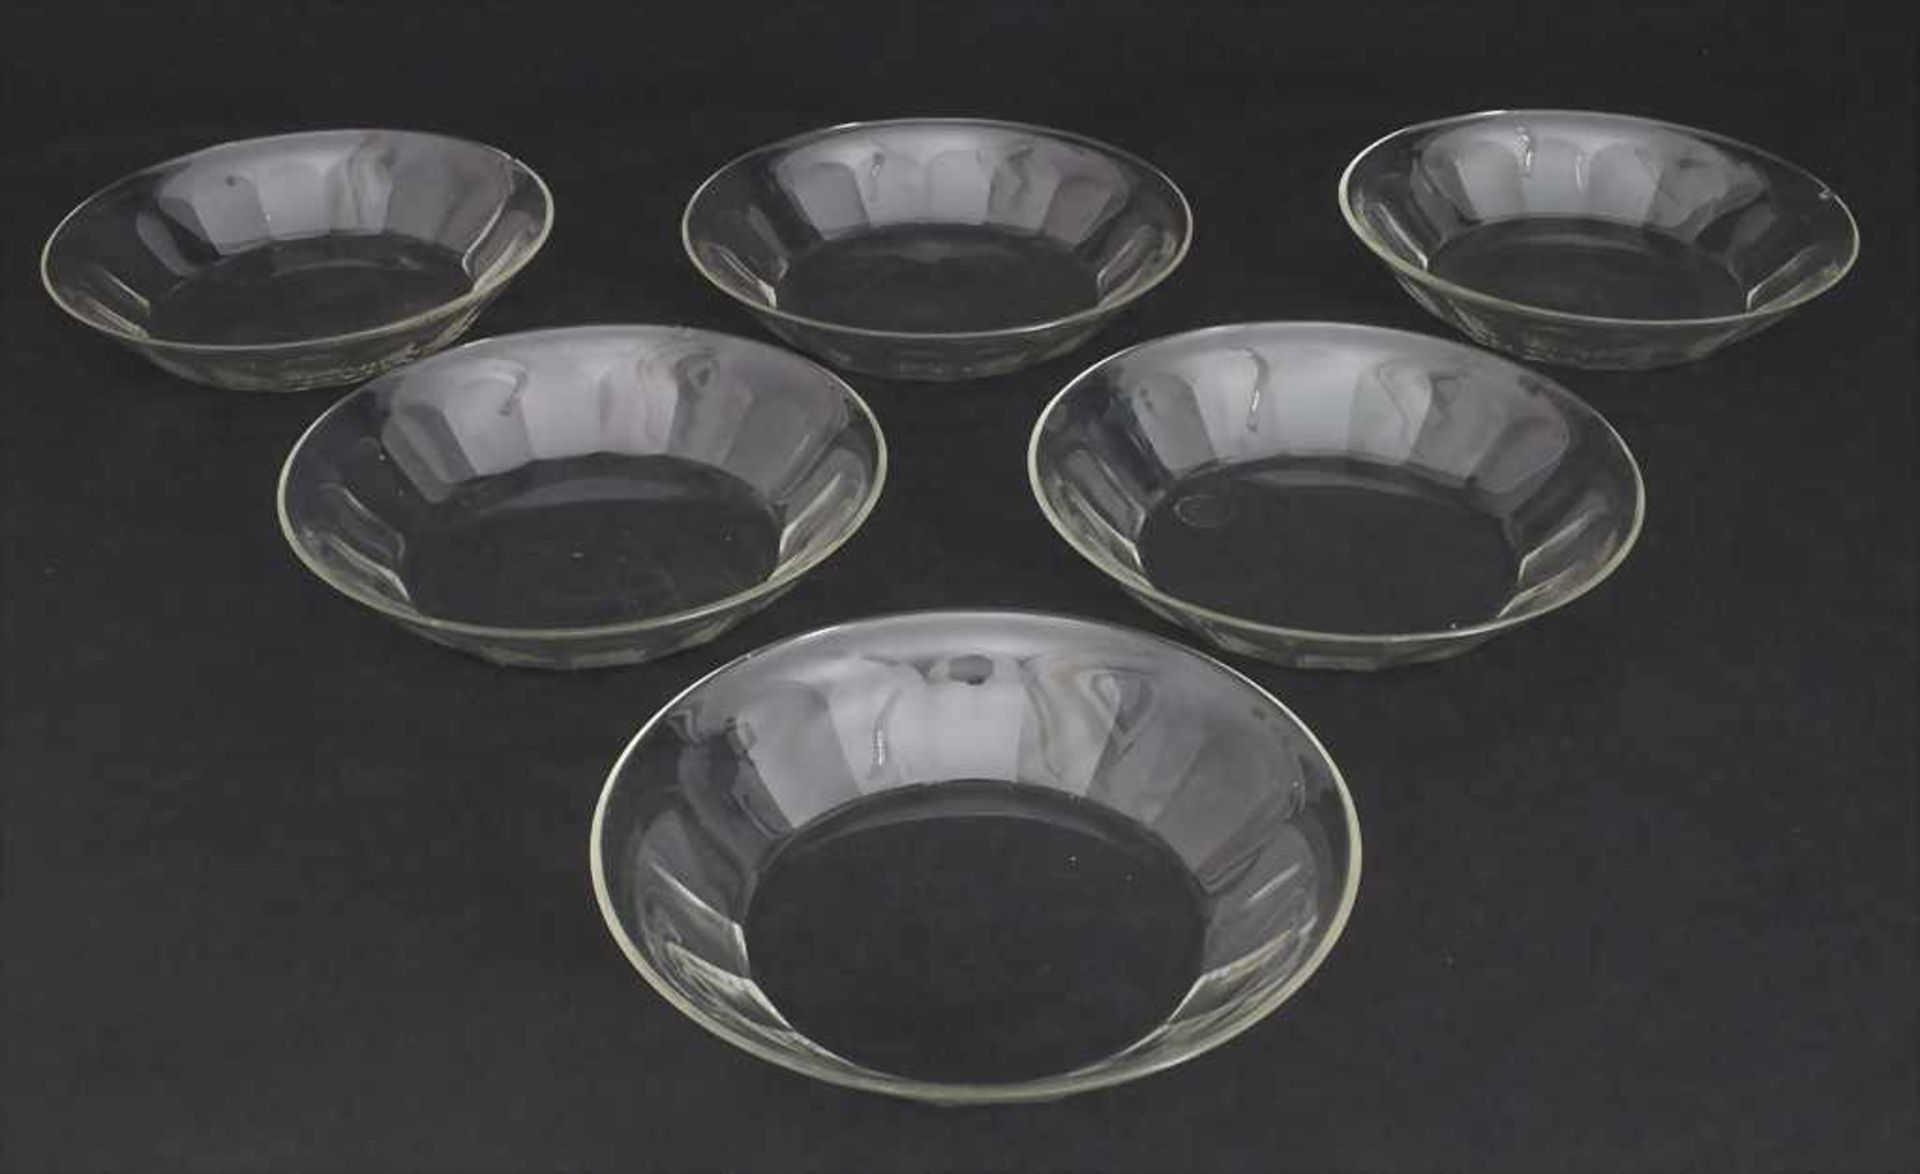 6 Glasschalen / 6 glass bowls, J. & L. Lobmeyr, Wien, um 1900